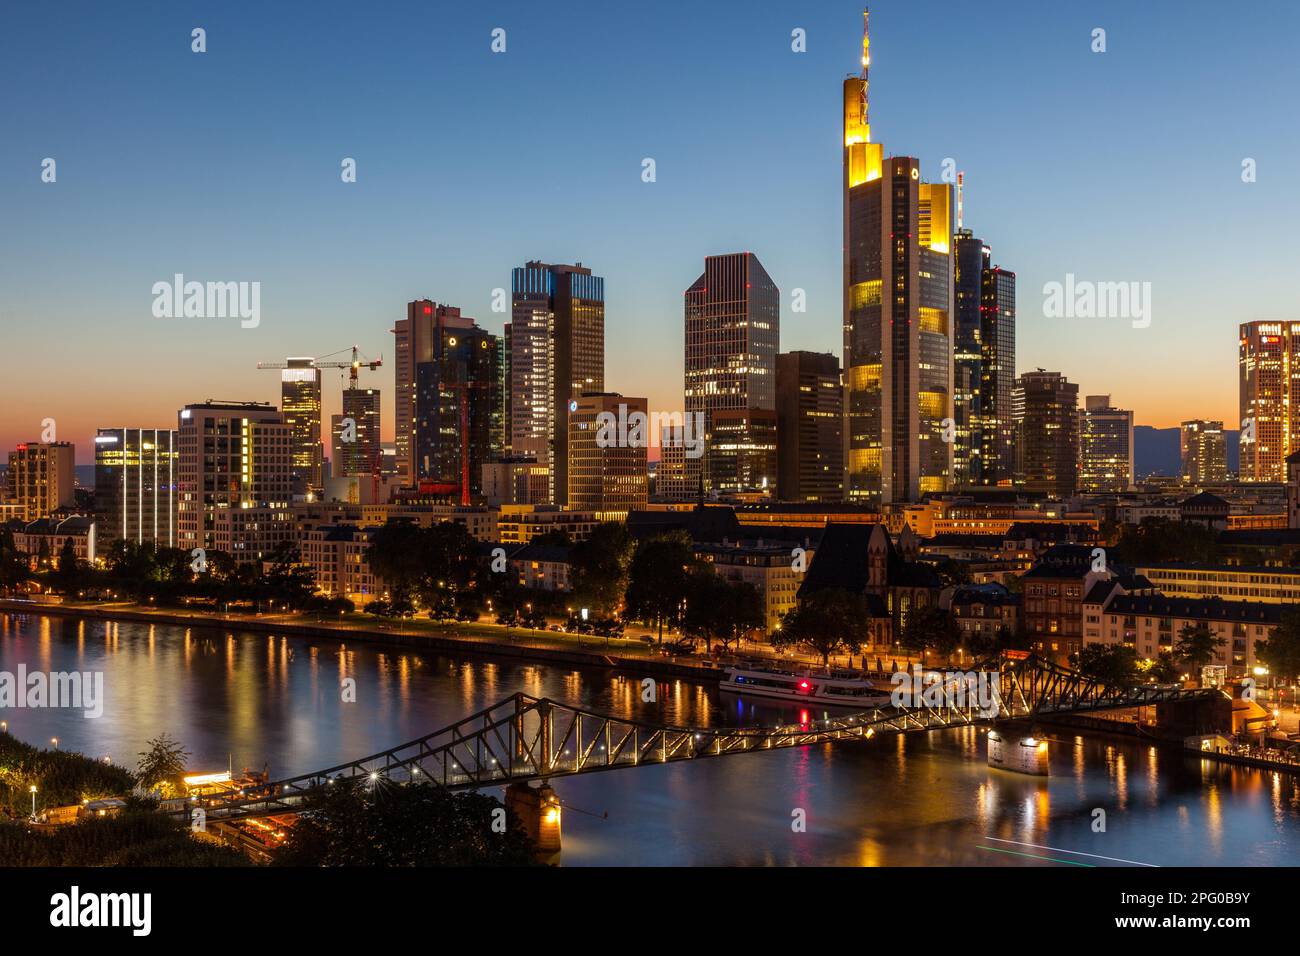 Skyline, Frankfurt, Hesse, Germany Stock Photo